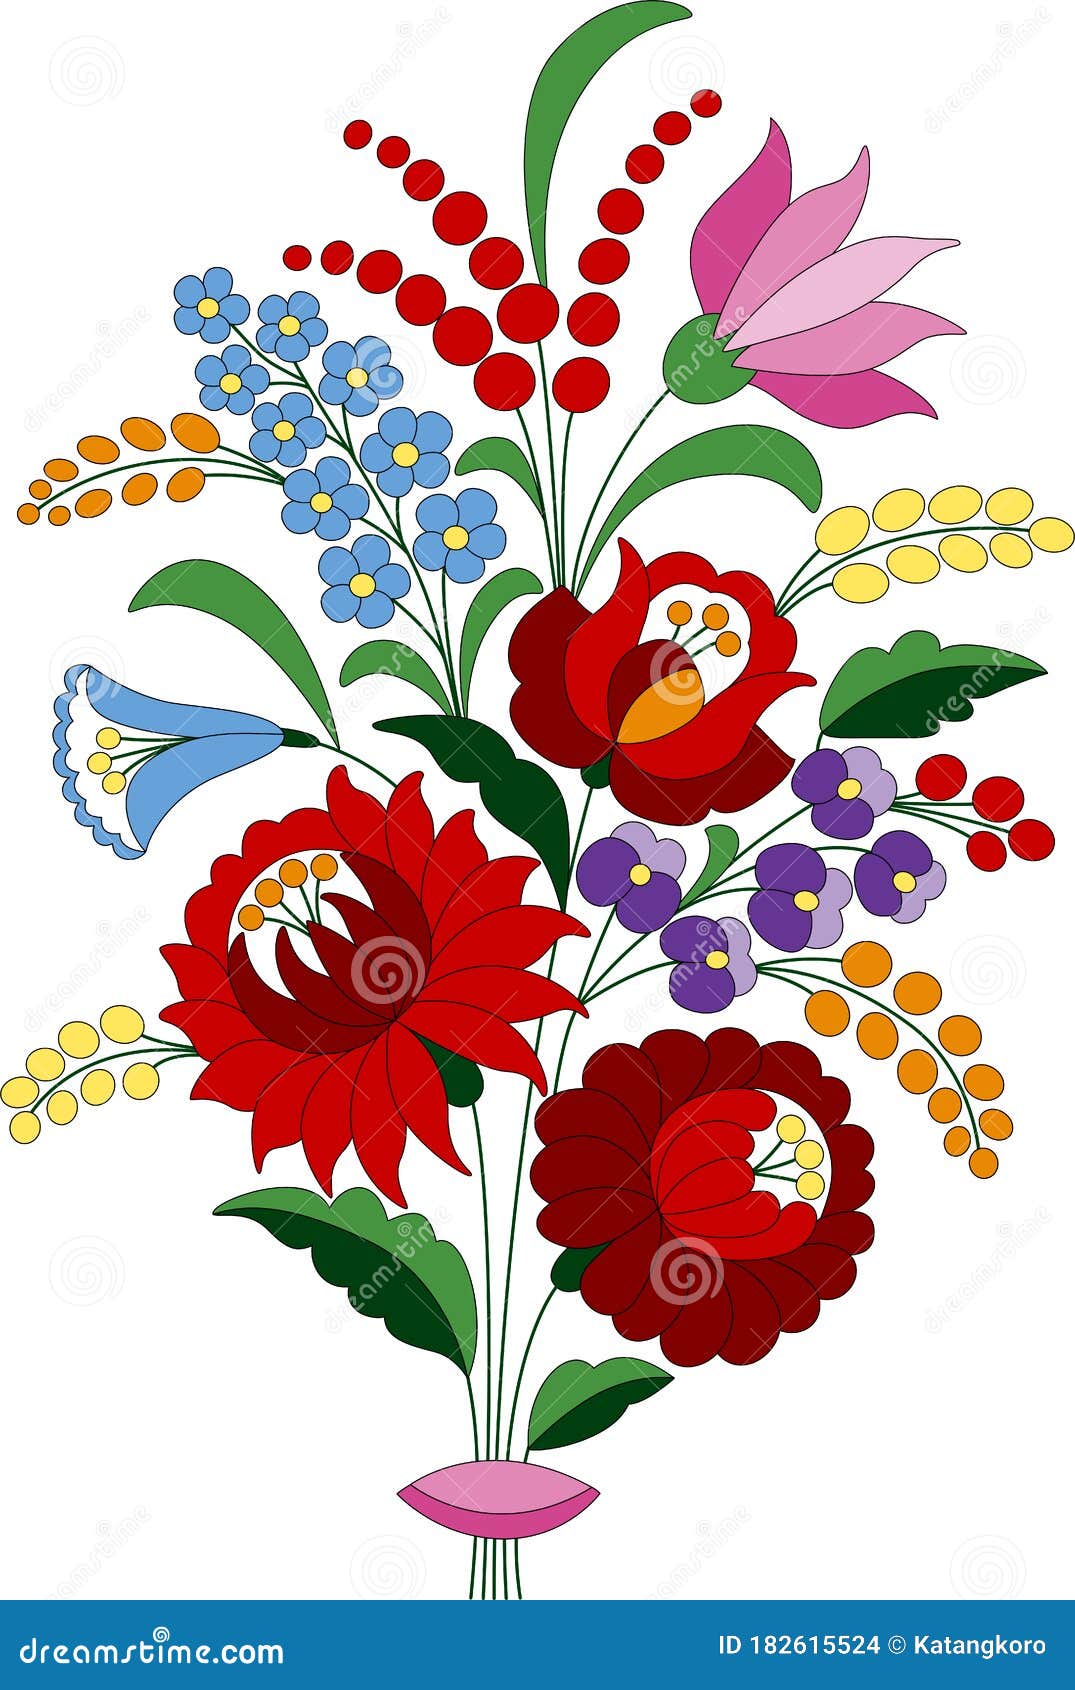 flower bouquet embroidery folk pattern